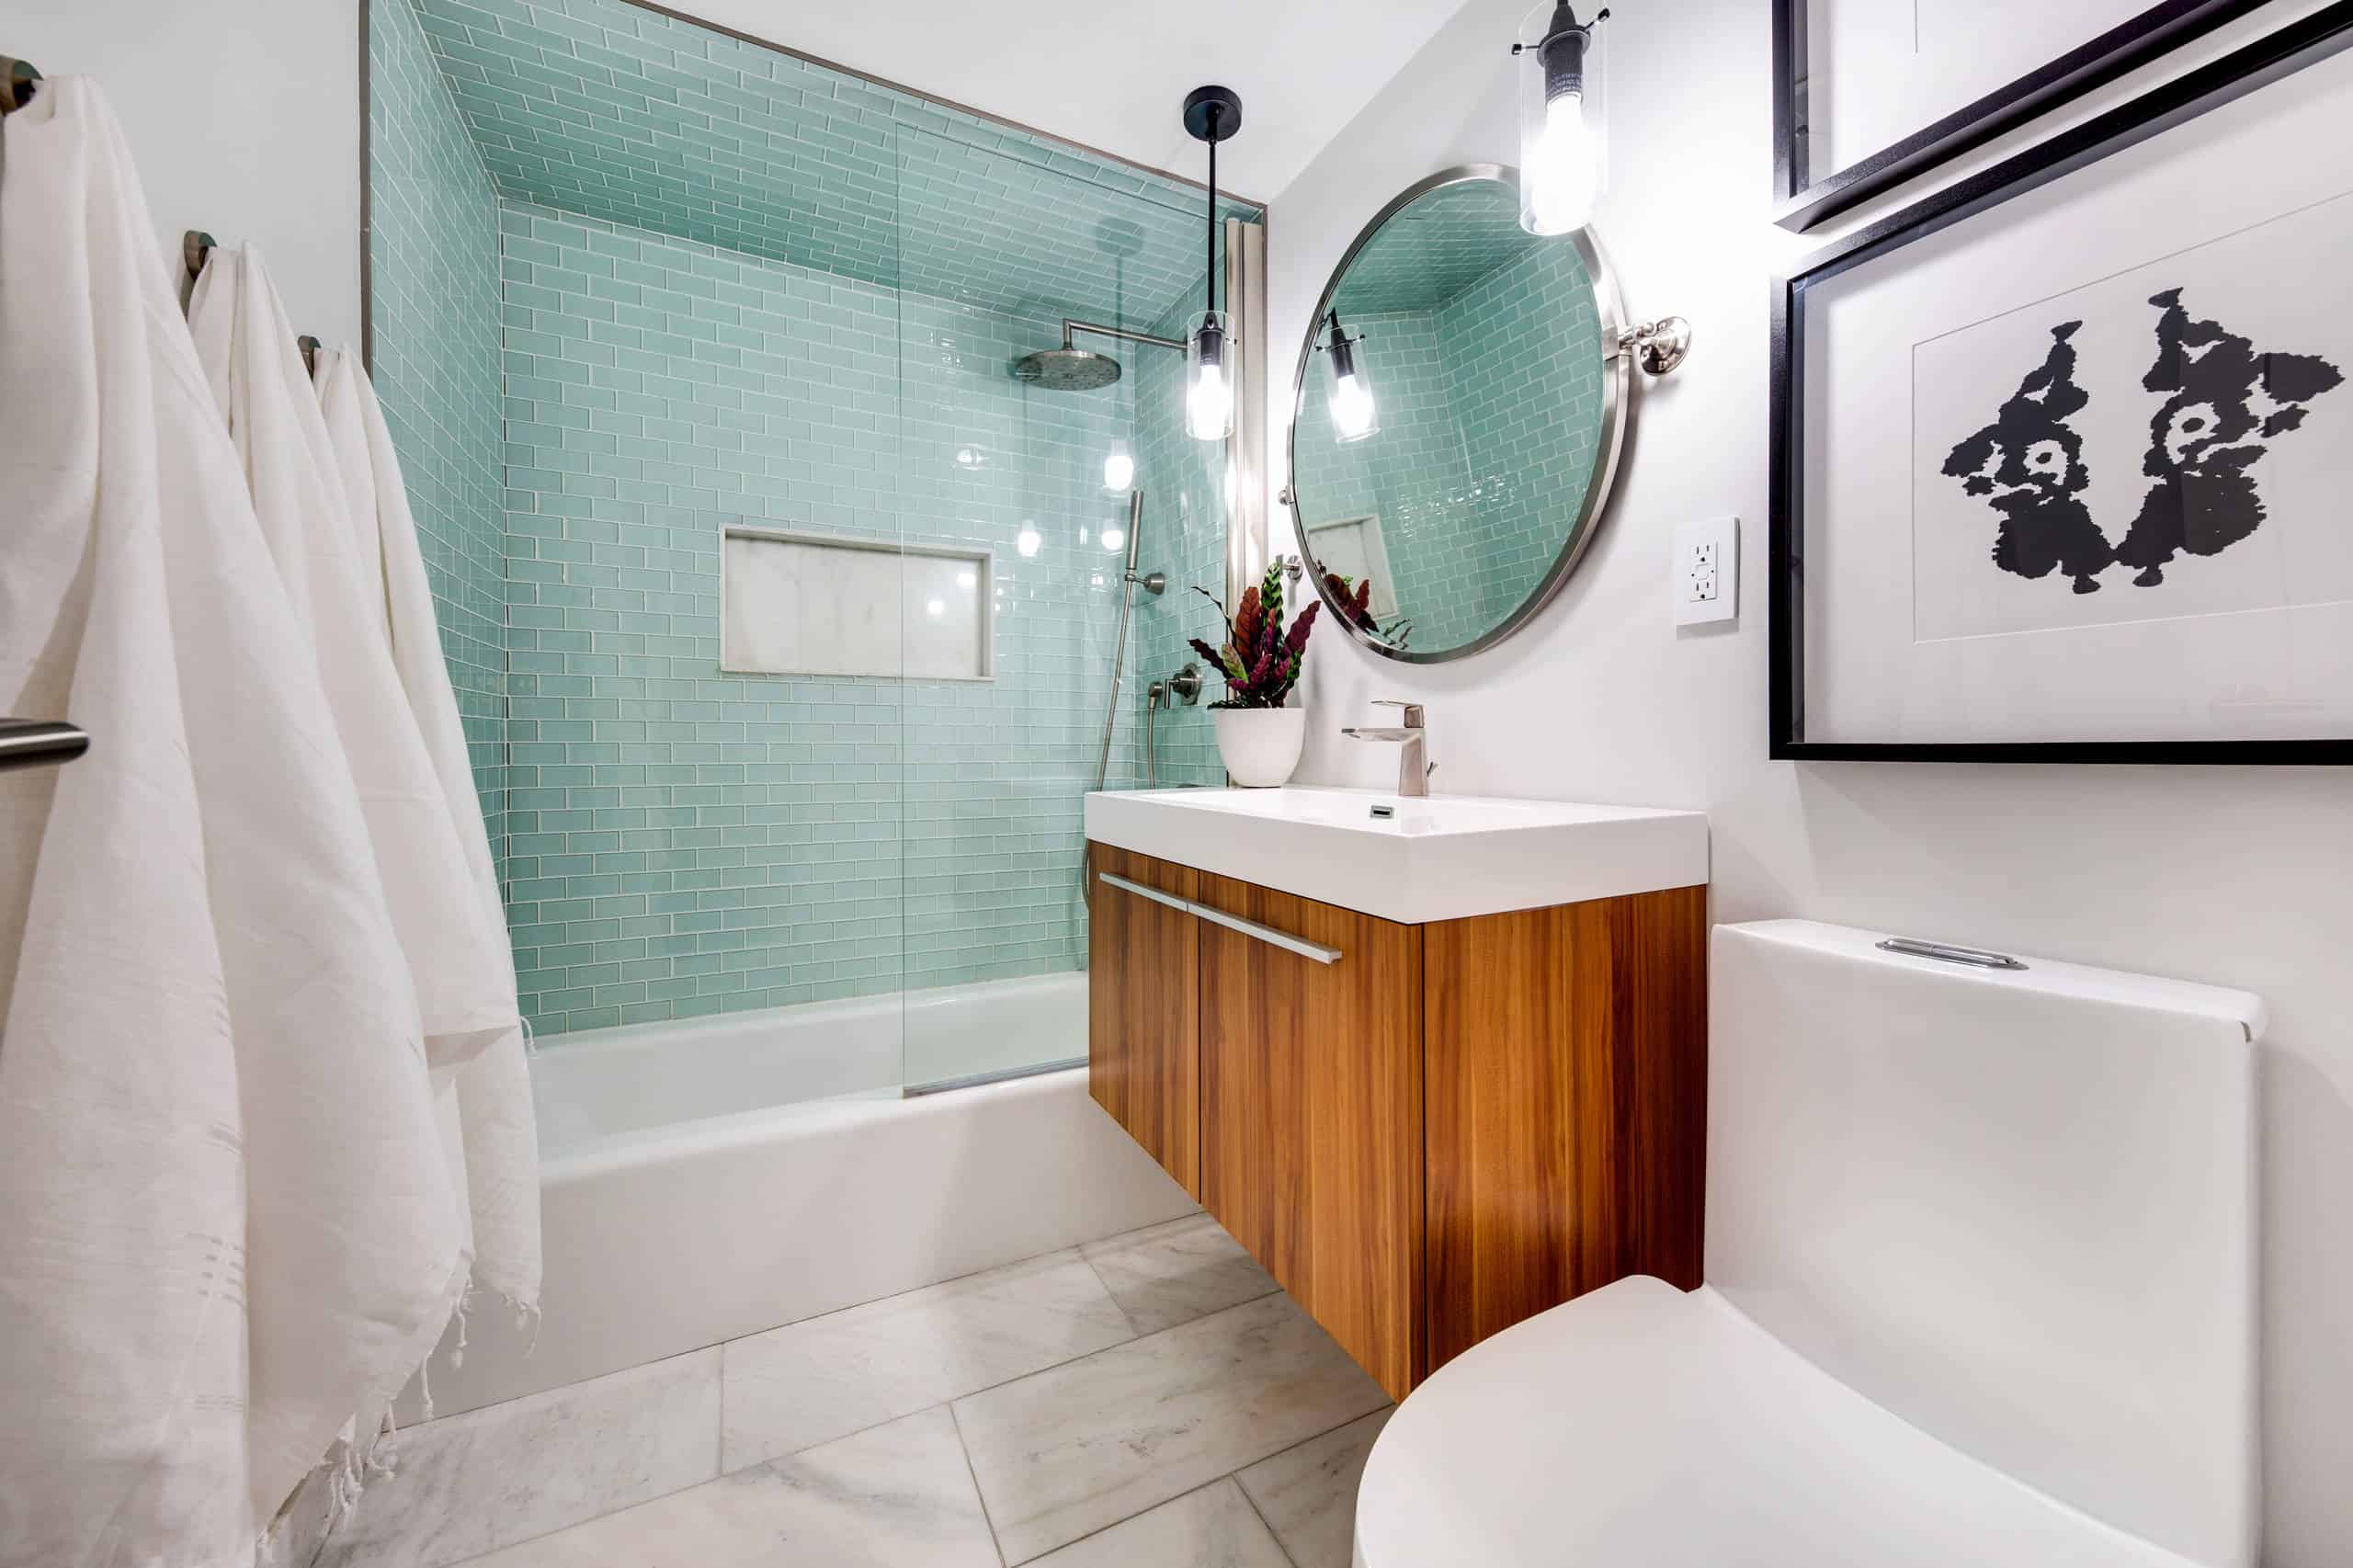 Small Bathroom Ideas With Bathtubs For 2021, Small Tiled Bathrooms